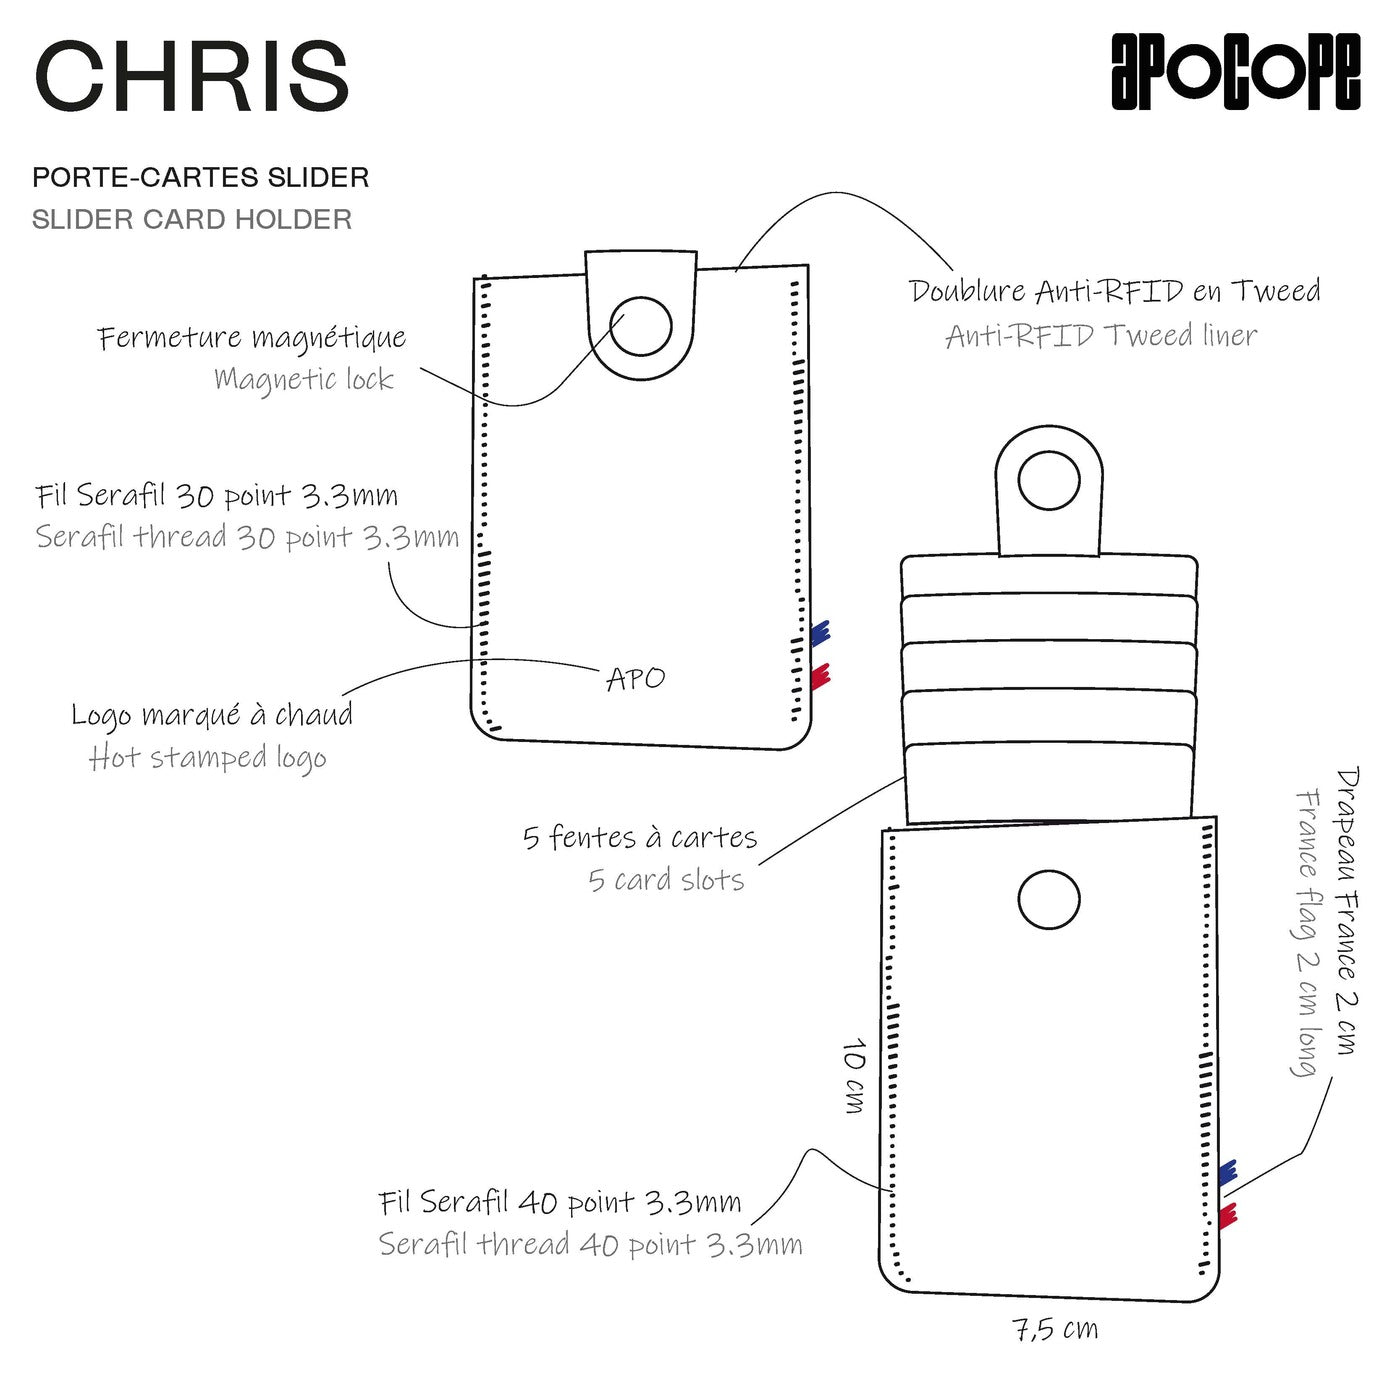 CHRIS - Porte-cartes slider en cuir recyclé - Bleu